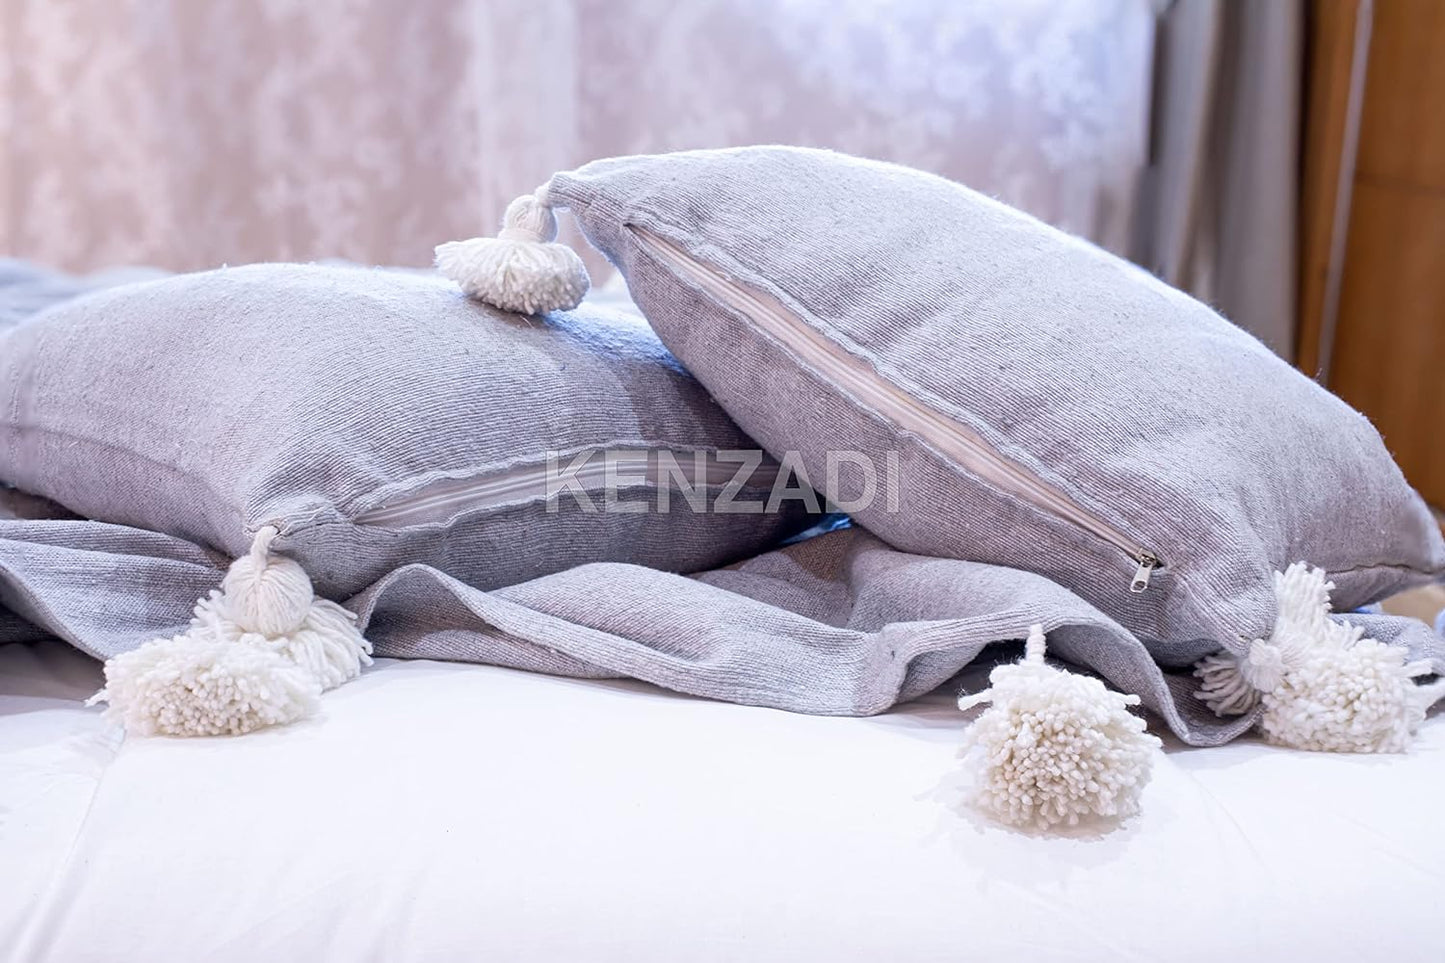 KENZADI Moroccan Handmade Pompom Blanket, Throw Blanket, Pom Pom Blanket, Boho Blanket, Bed Cover, Warm Blanket, Cozy Blanket (Grey with pom White, King (U.S. Standard)) - Handmade by My Poufs